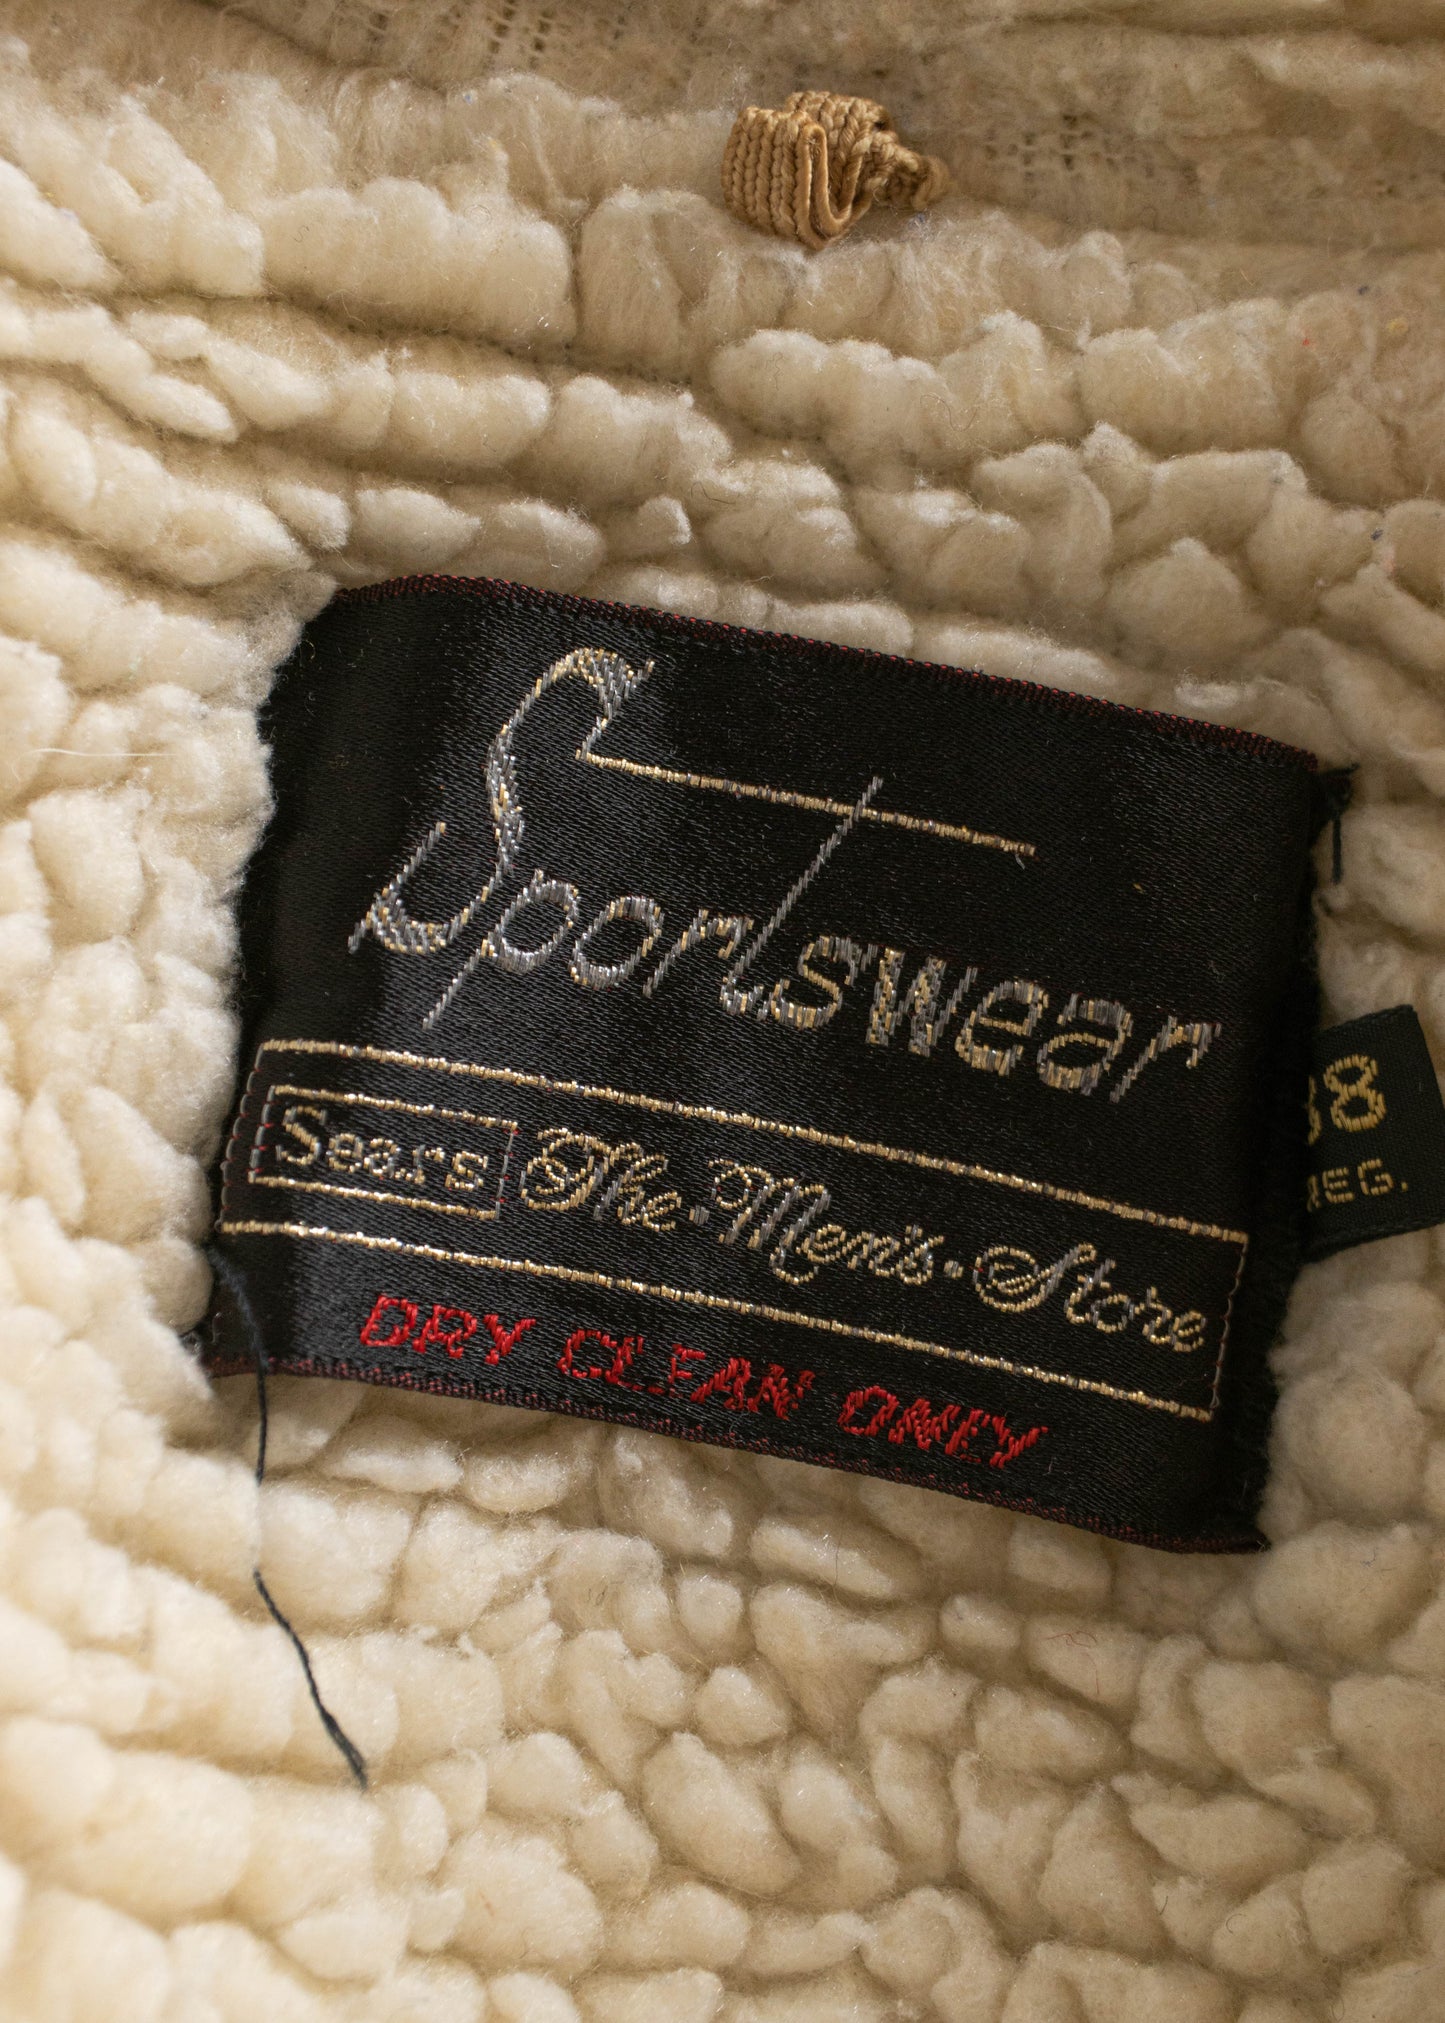 1970s Sears Sportswear Sherpa Denim Jacket Size M/L